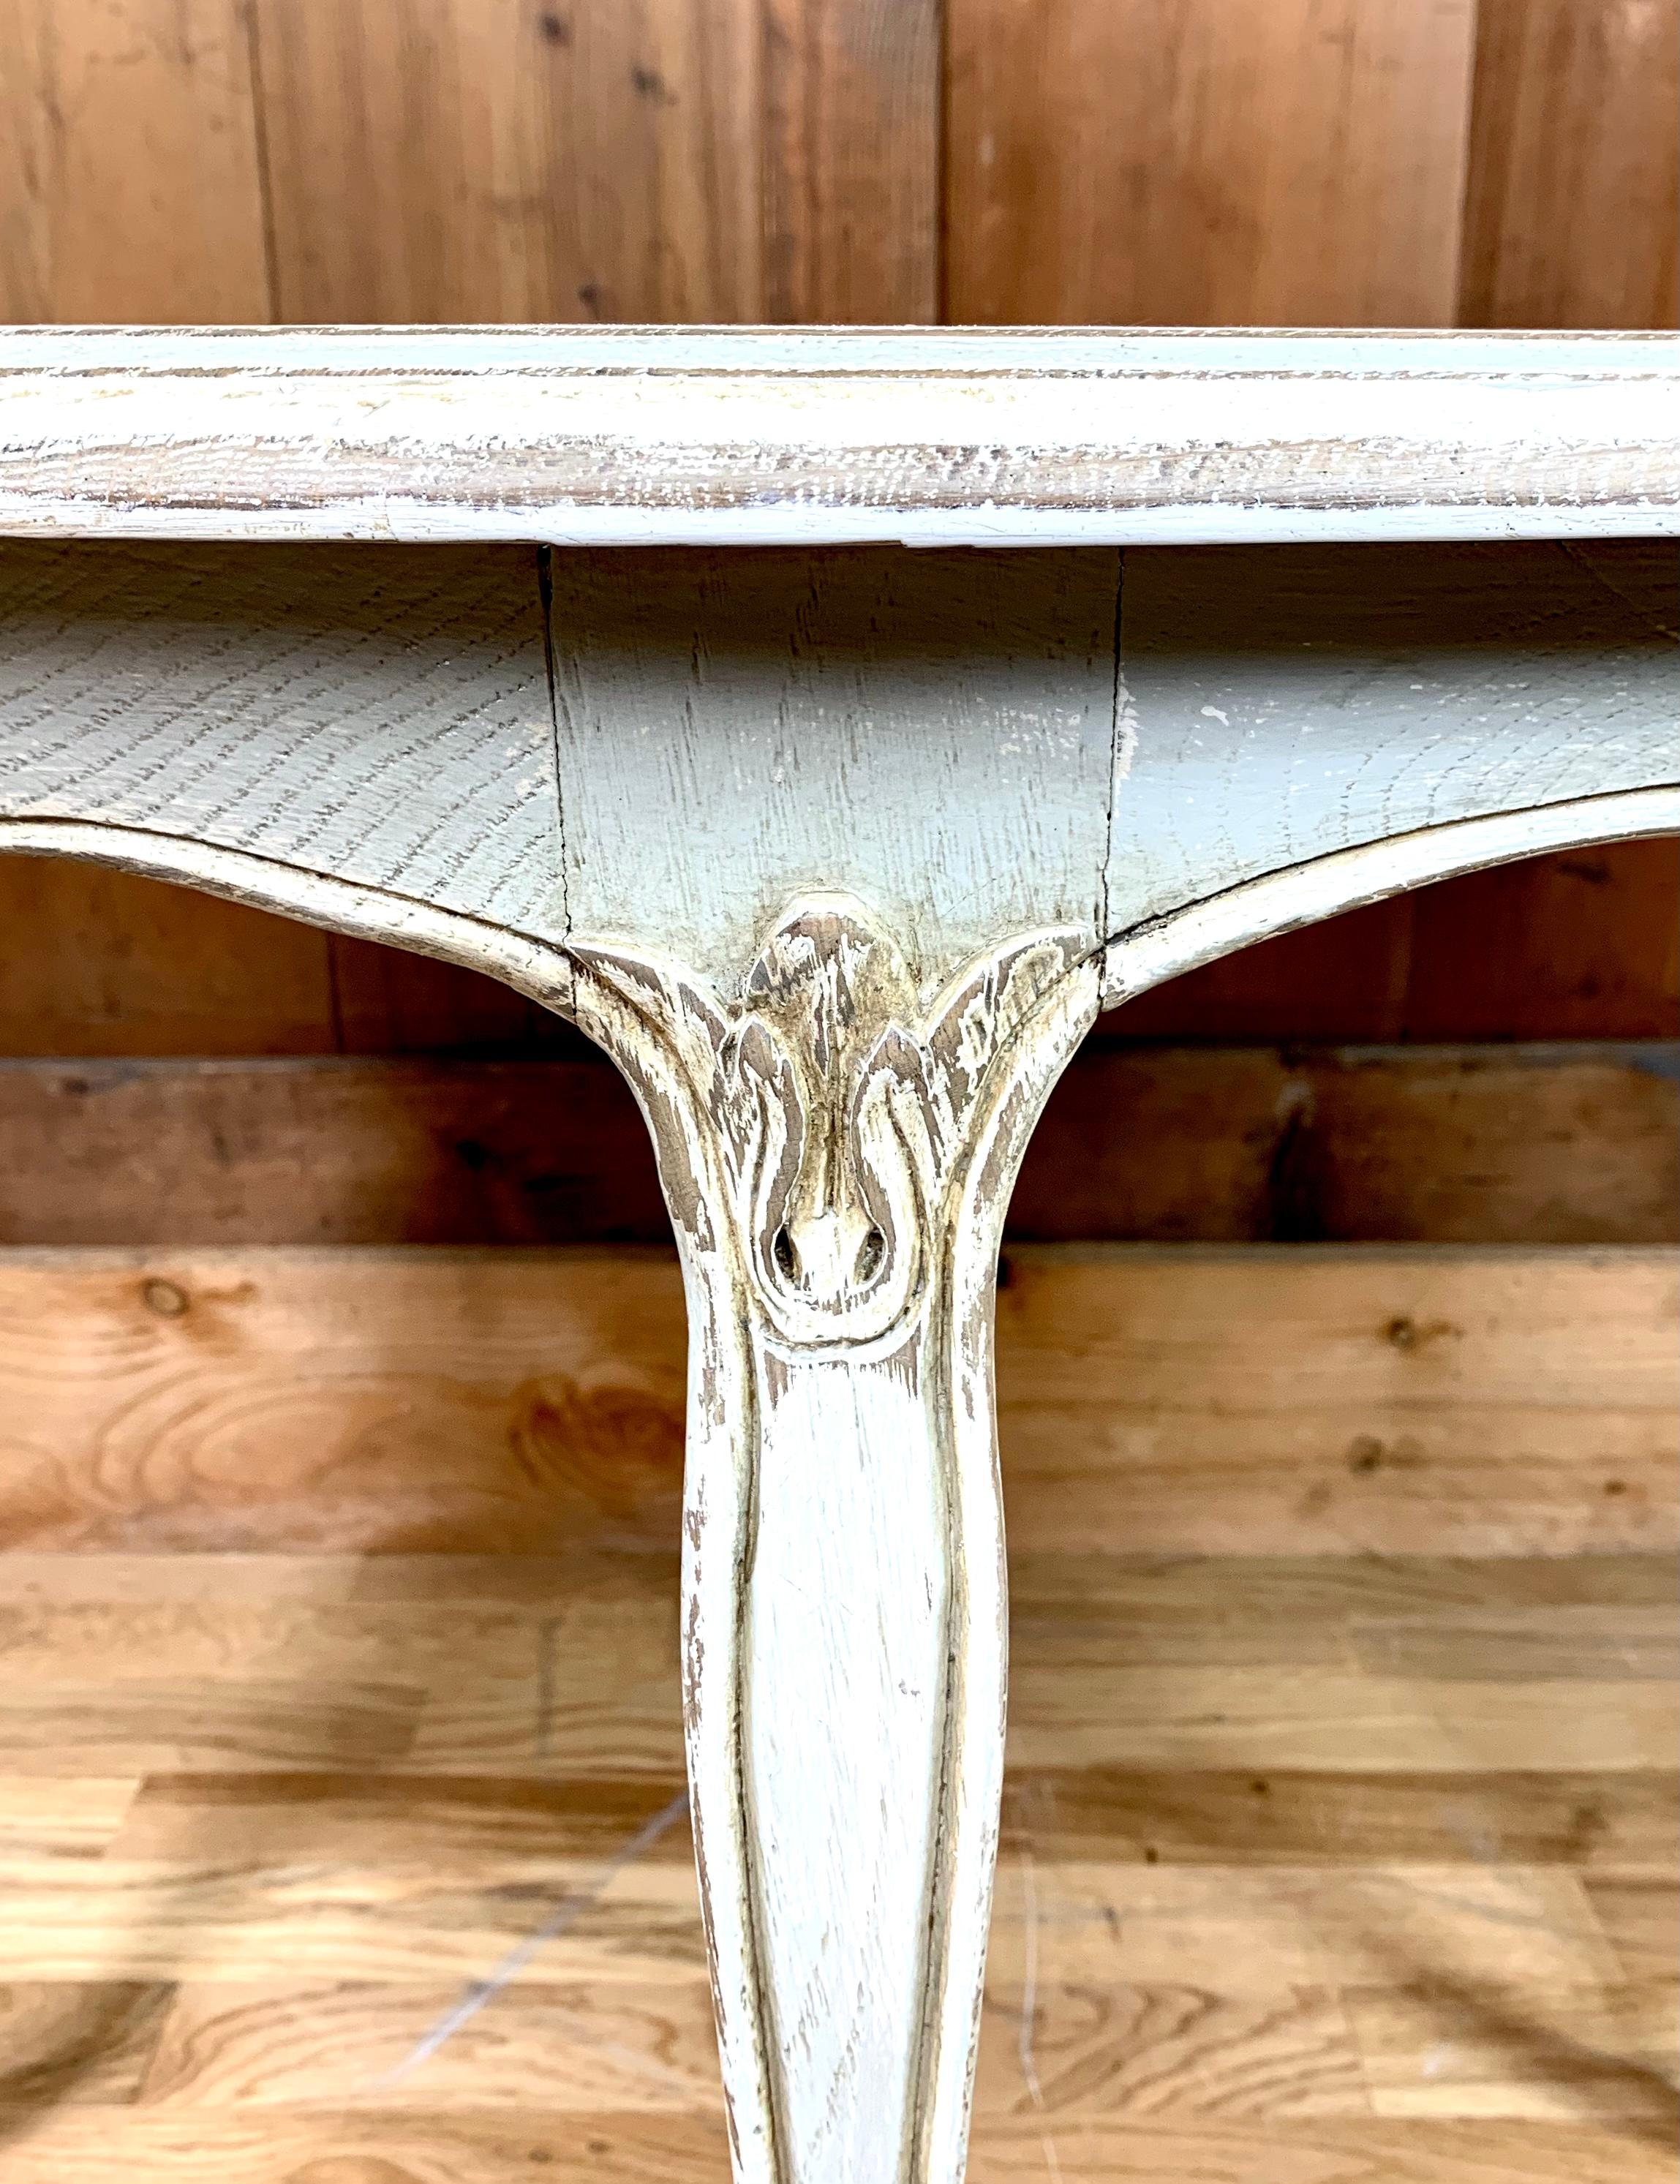 Charmante table basse ronde de style Louis XV en bois. Cette table est patinée dans des tons bleu-gris, ce qui lui donne un aspect vintage ou shabby chic. Les pieds sont incurvés et le dessus des pieds est sculpté de motifs floraux. 

France